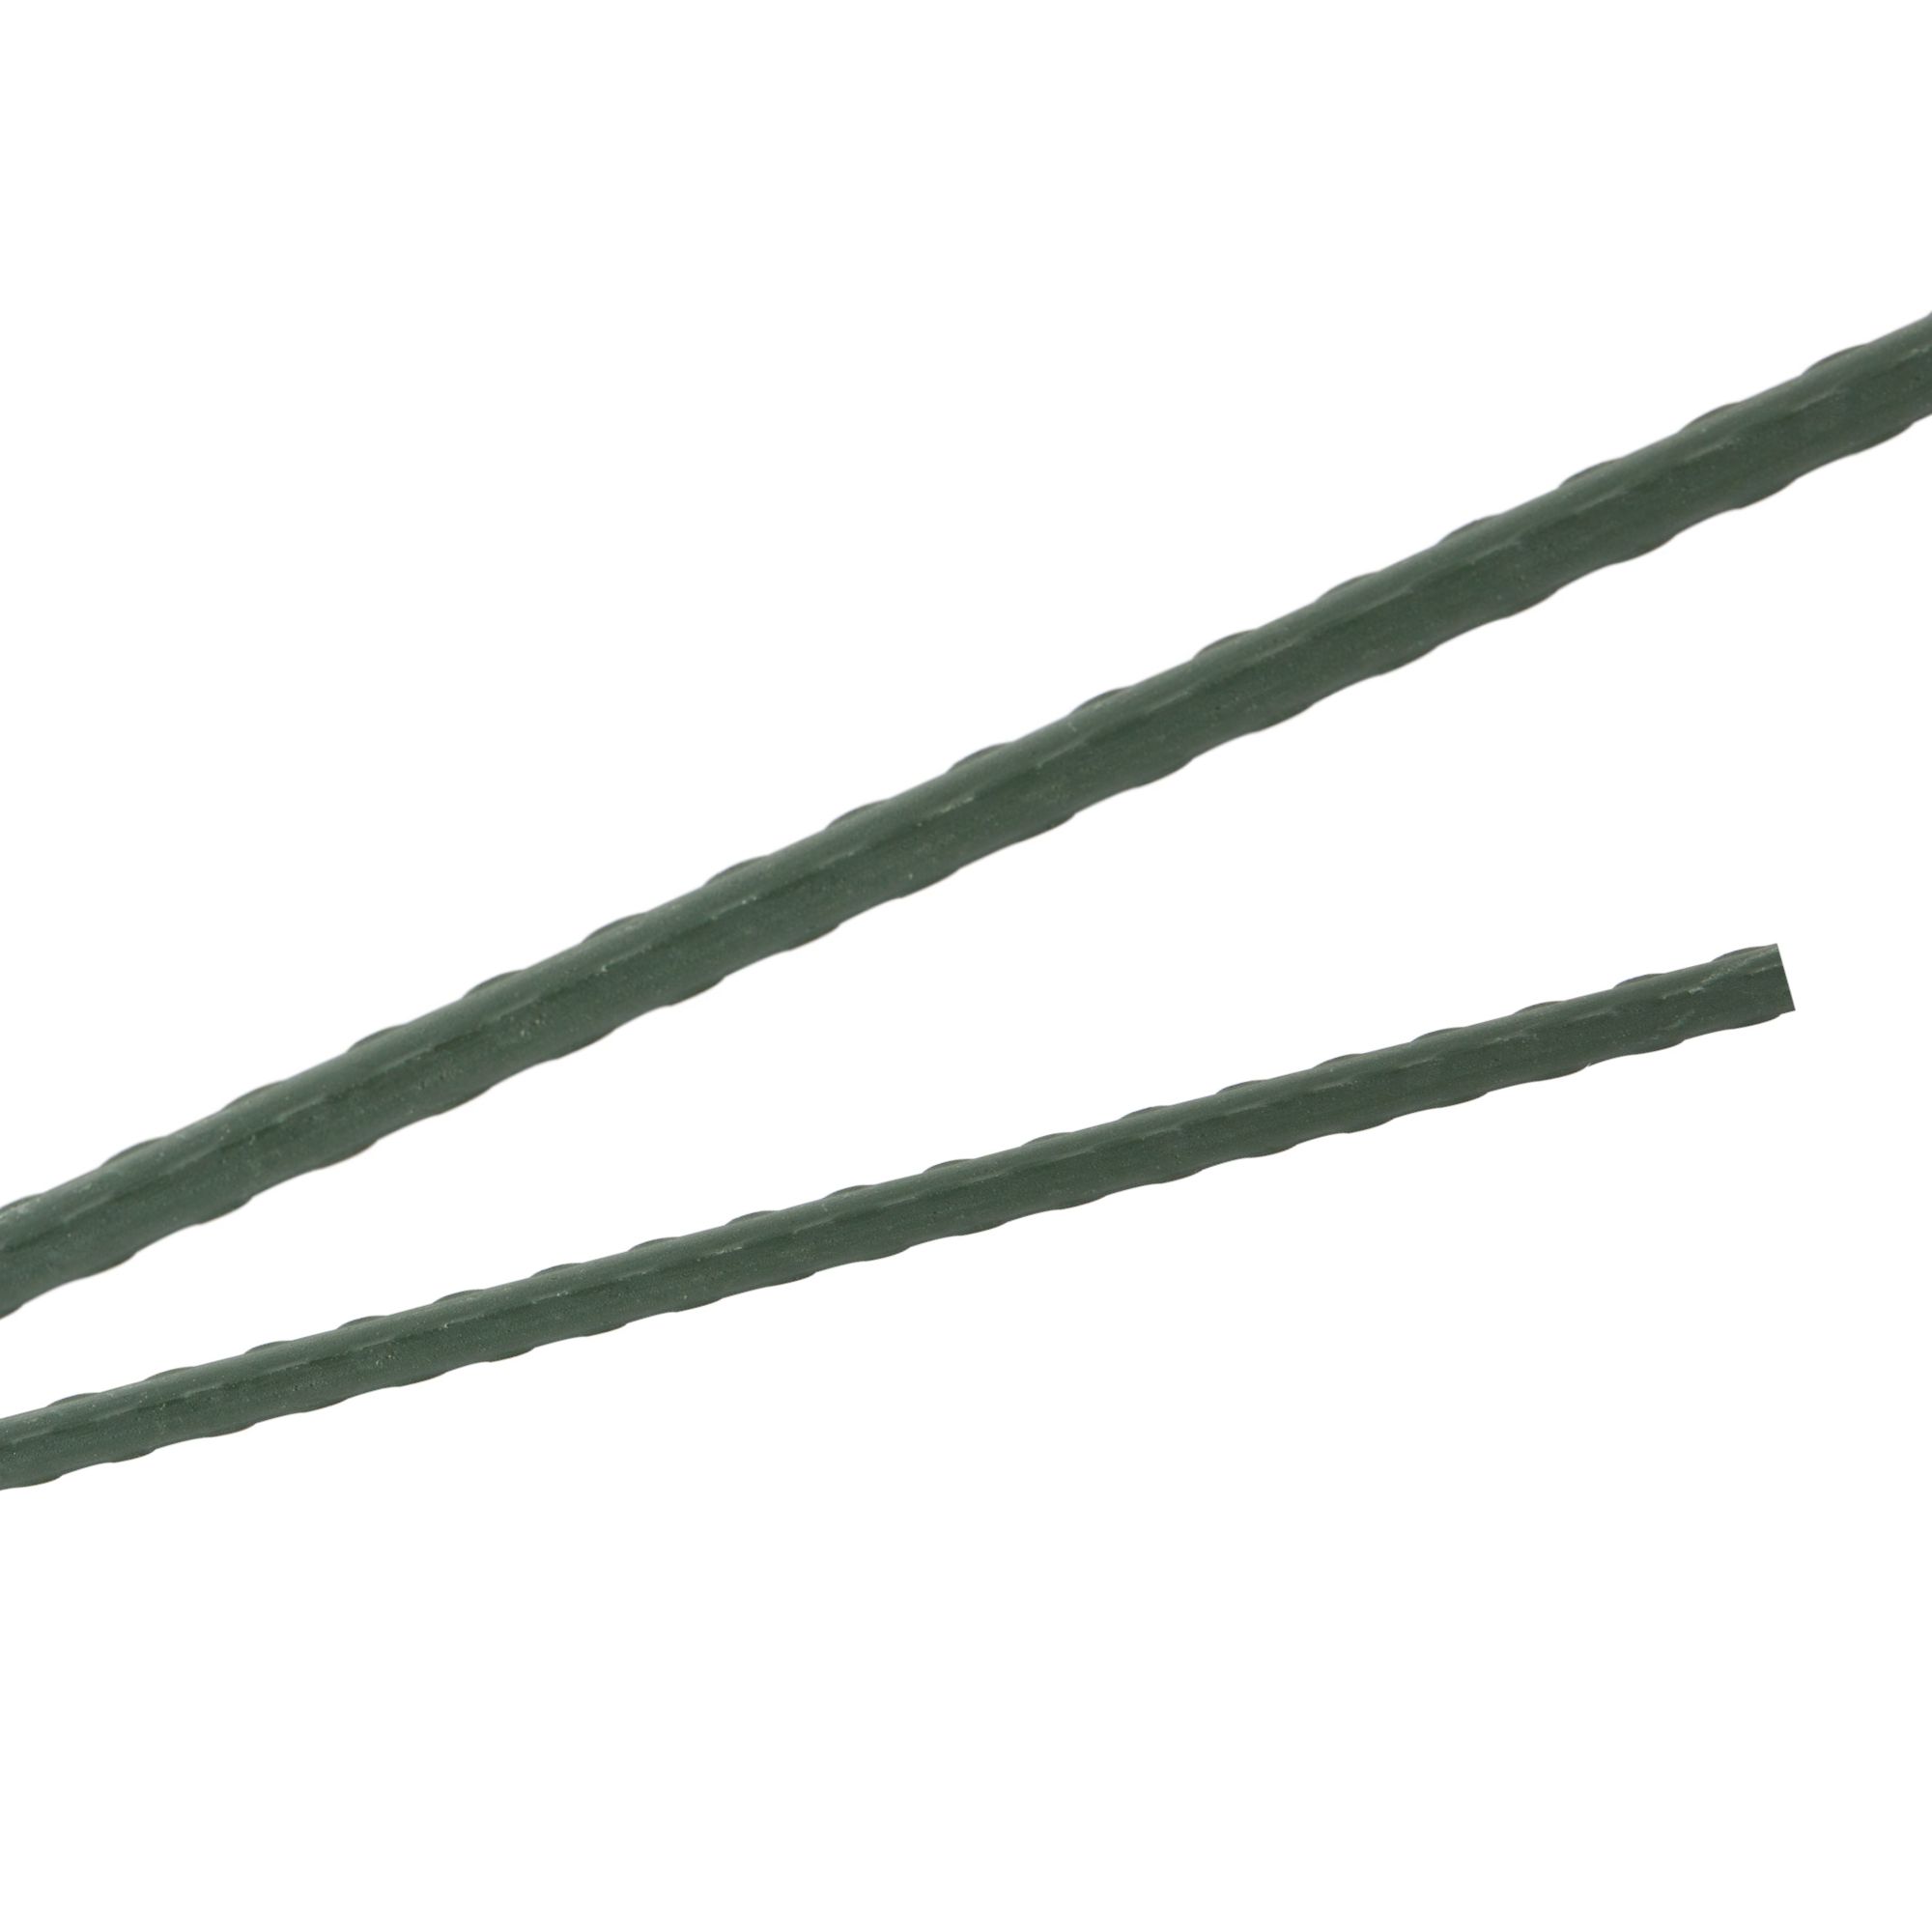 Tyč podpěrná, 16mm, 180cm, kov+PVC, zelená 0.217000 Kg GIGA Sklad20 45659 84